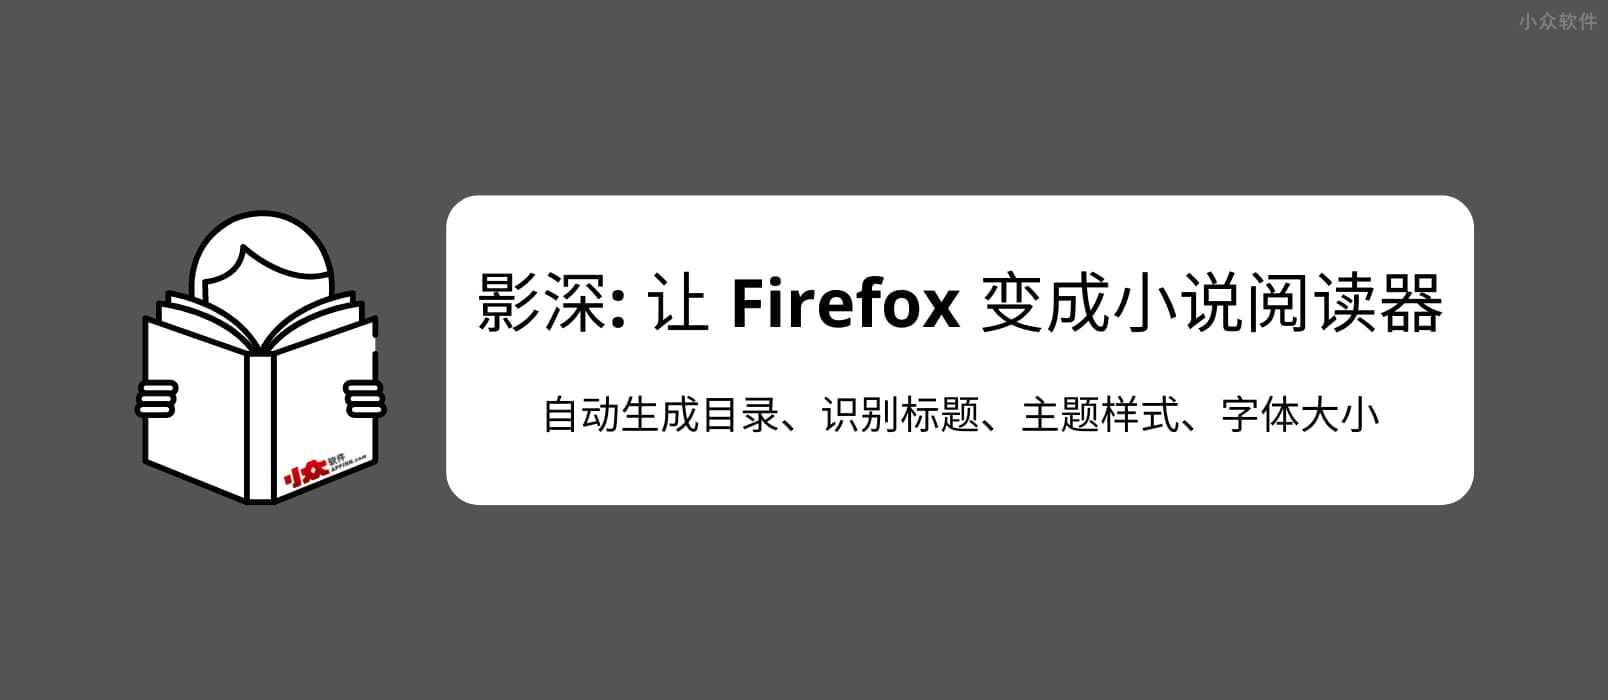 影深 - 让 Firefox 变成小说阅读器，为 .TXT 文件自动生成目录、识别标题、主题样式。效果非常赞，书虫必备